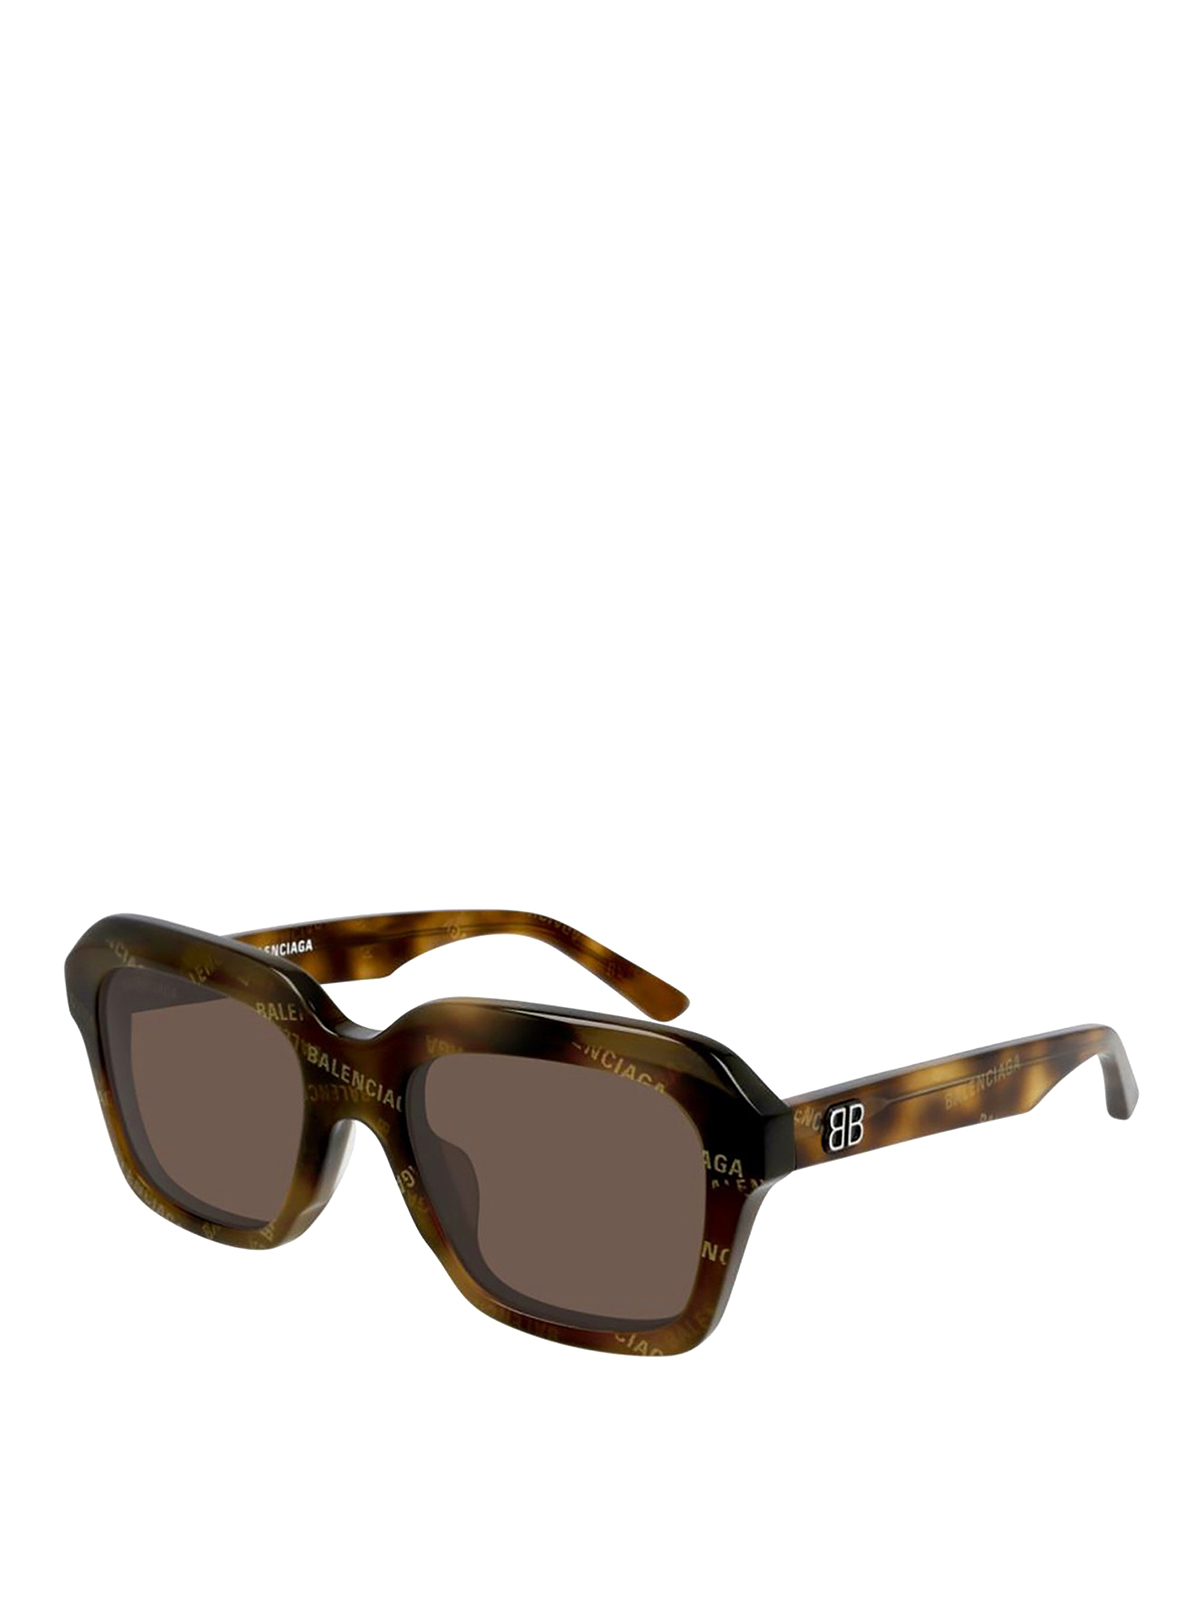 Balenciaga Power Rectangle Sunglasses In Brown